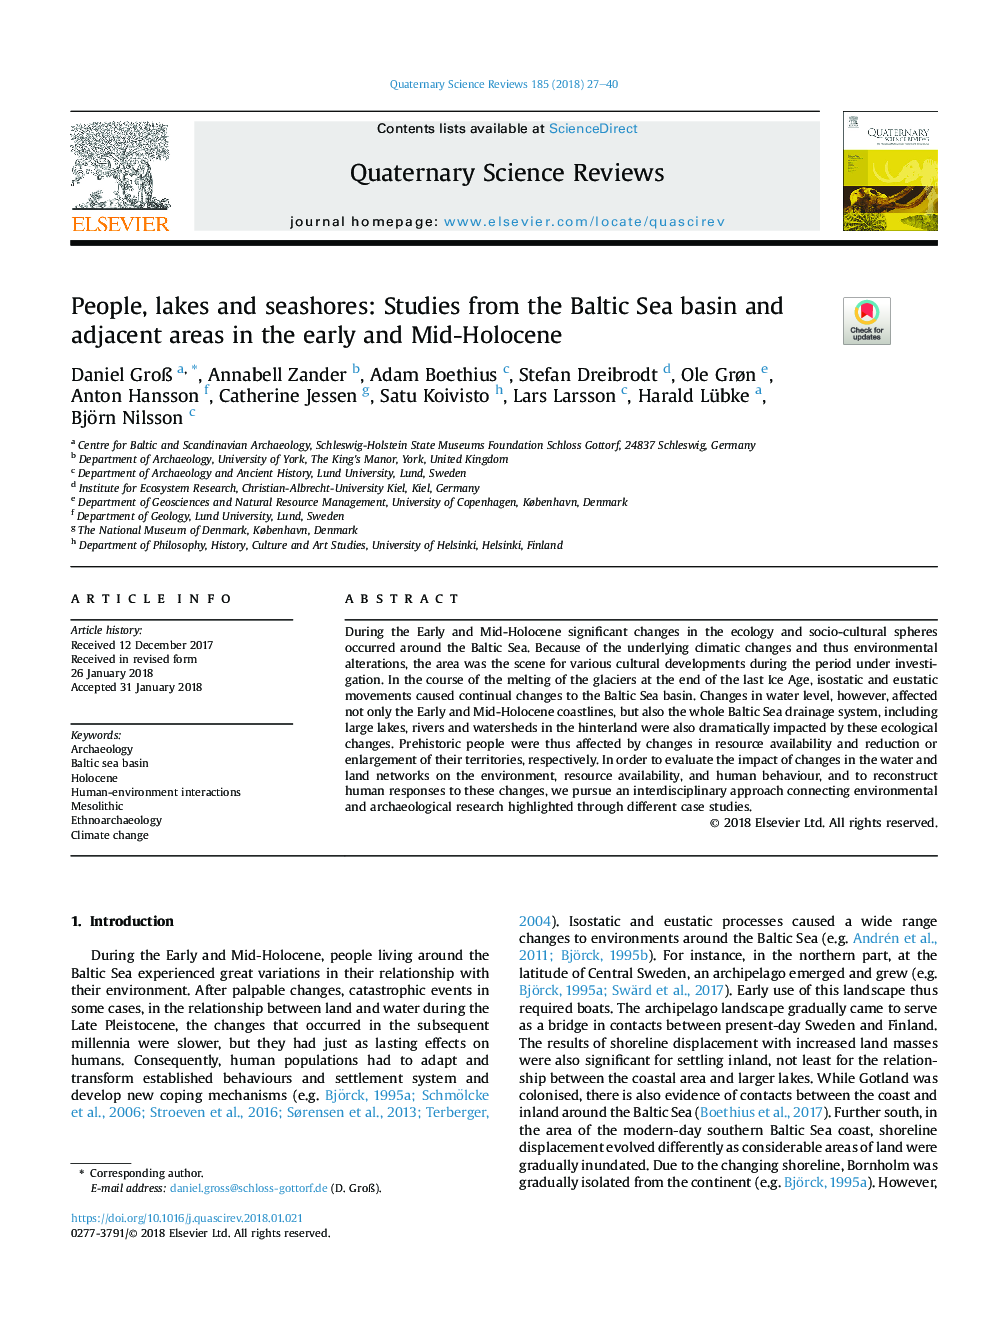 مردم، دریاچه ها و دریاچه ها: مطالعات حوضه دریای بالتیک و مناطق مجاور در اوایل و میانه هولزن